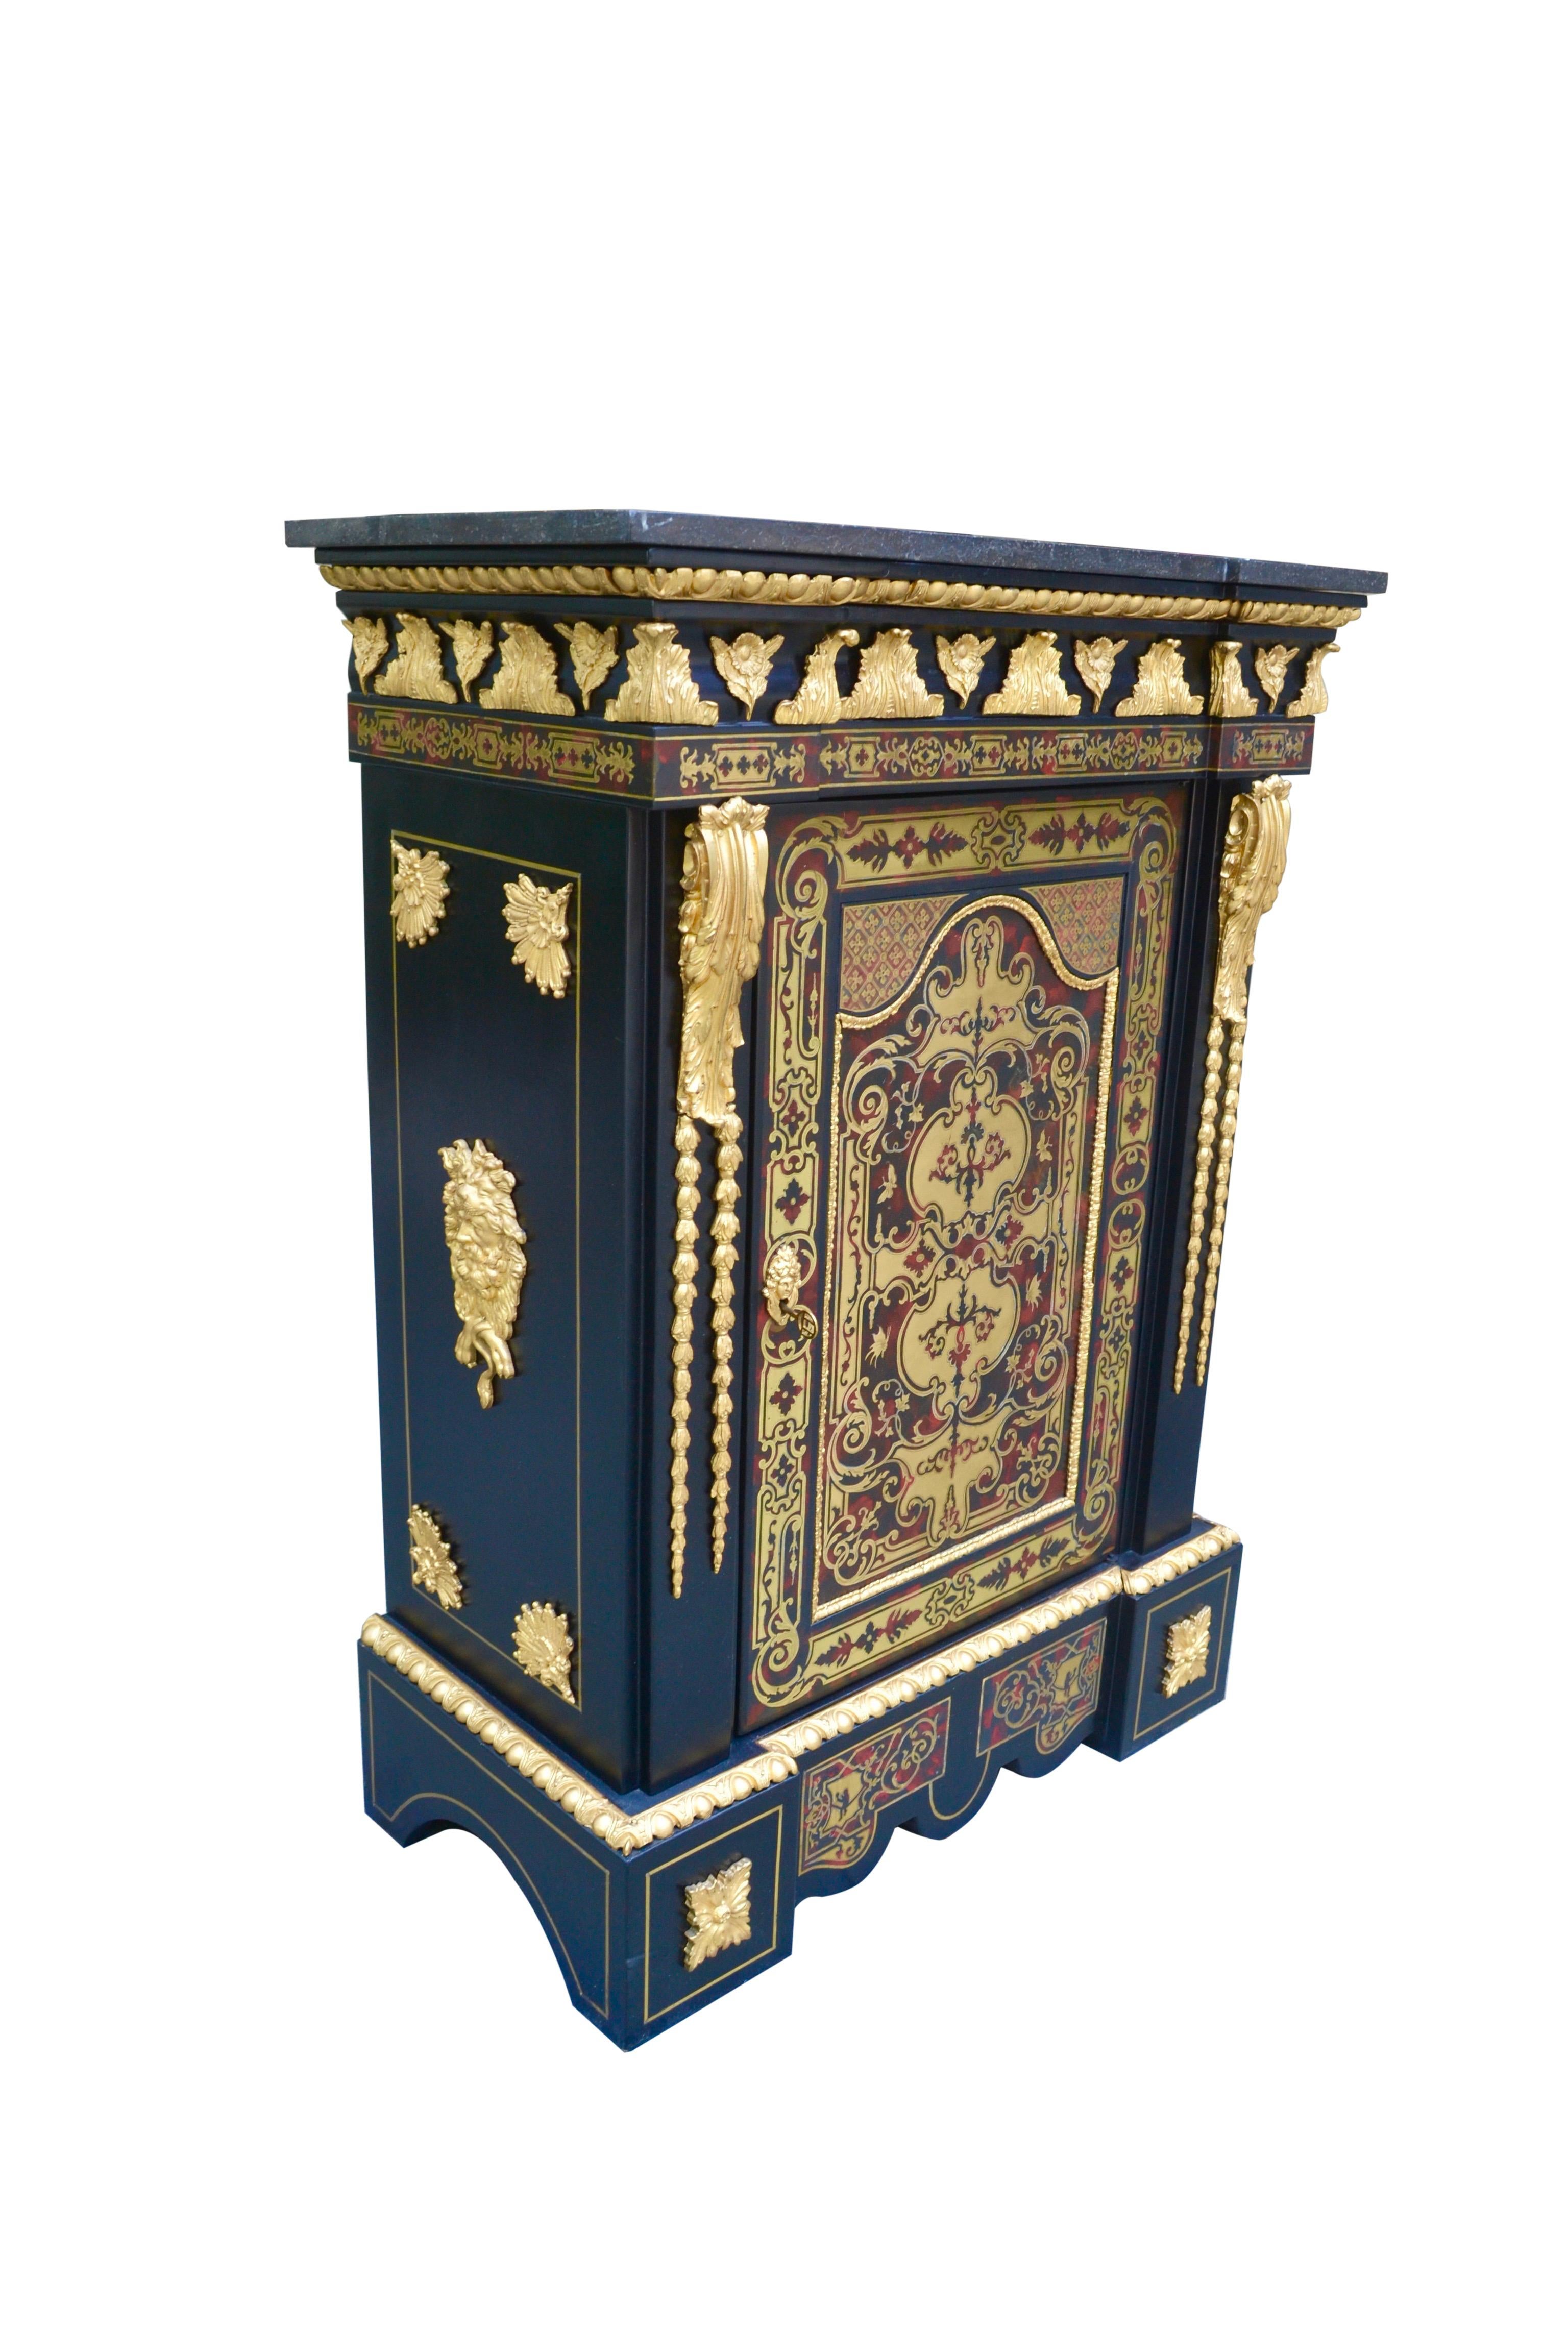 Un meuble français de très belle qualité appelé Meuble d'Appui. Cette pièce a été fabriquée à Paris sous le règne de Napoléon III, vers 1870. Le meuble en ébène est incrusté de laiton et est orné de somptueuses montures et moulures en bronze doré.